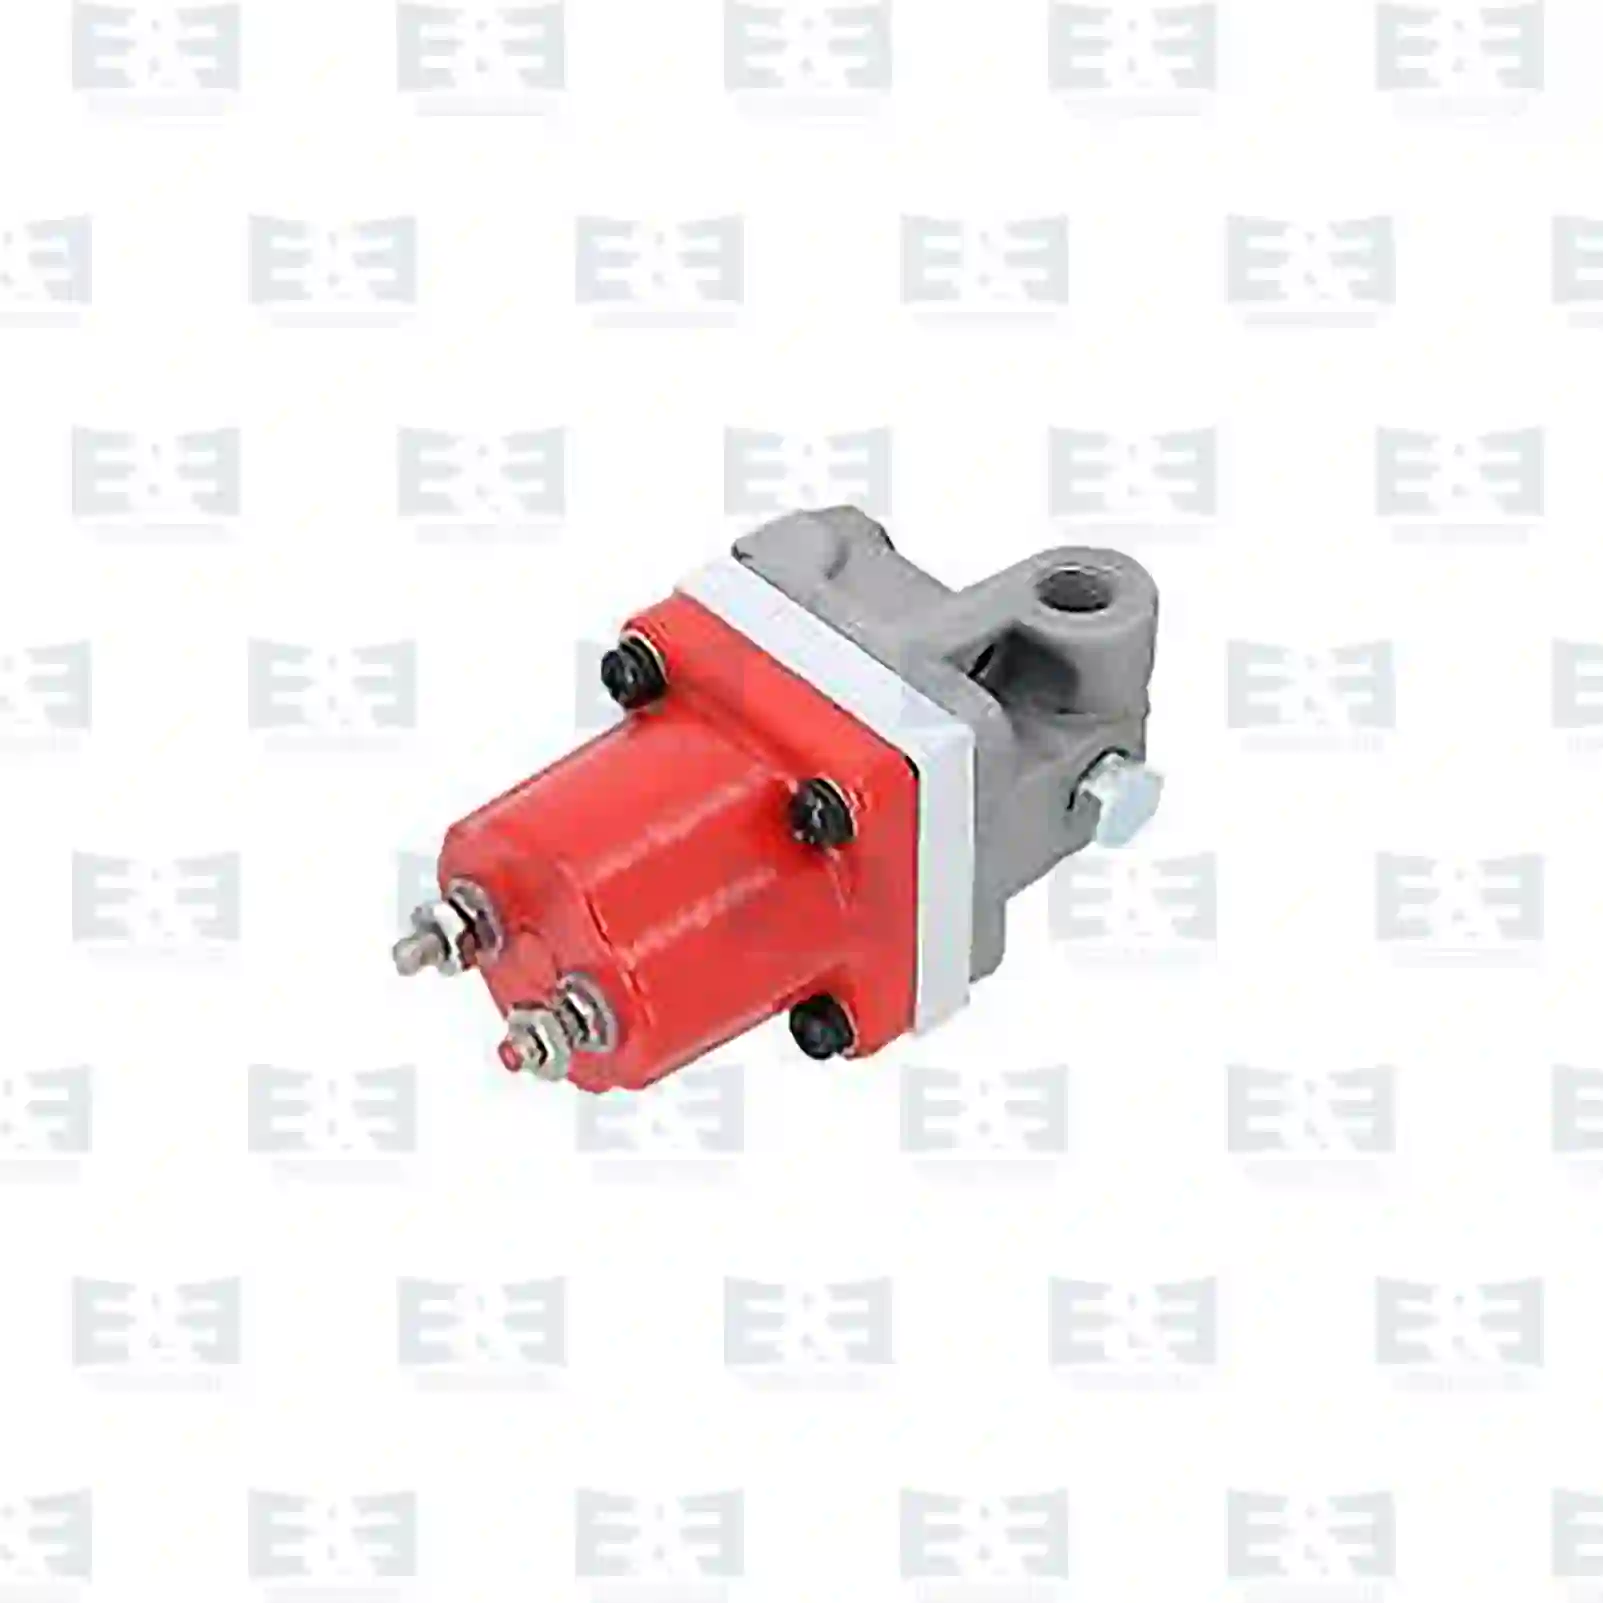  Fuel valve || E&E Truck Spare Parts | Truck Spare Parts, Auotomotive Spare Parts